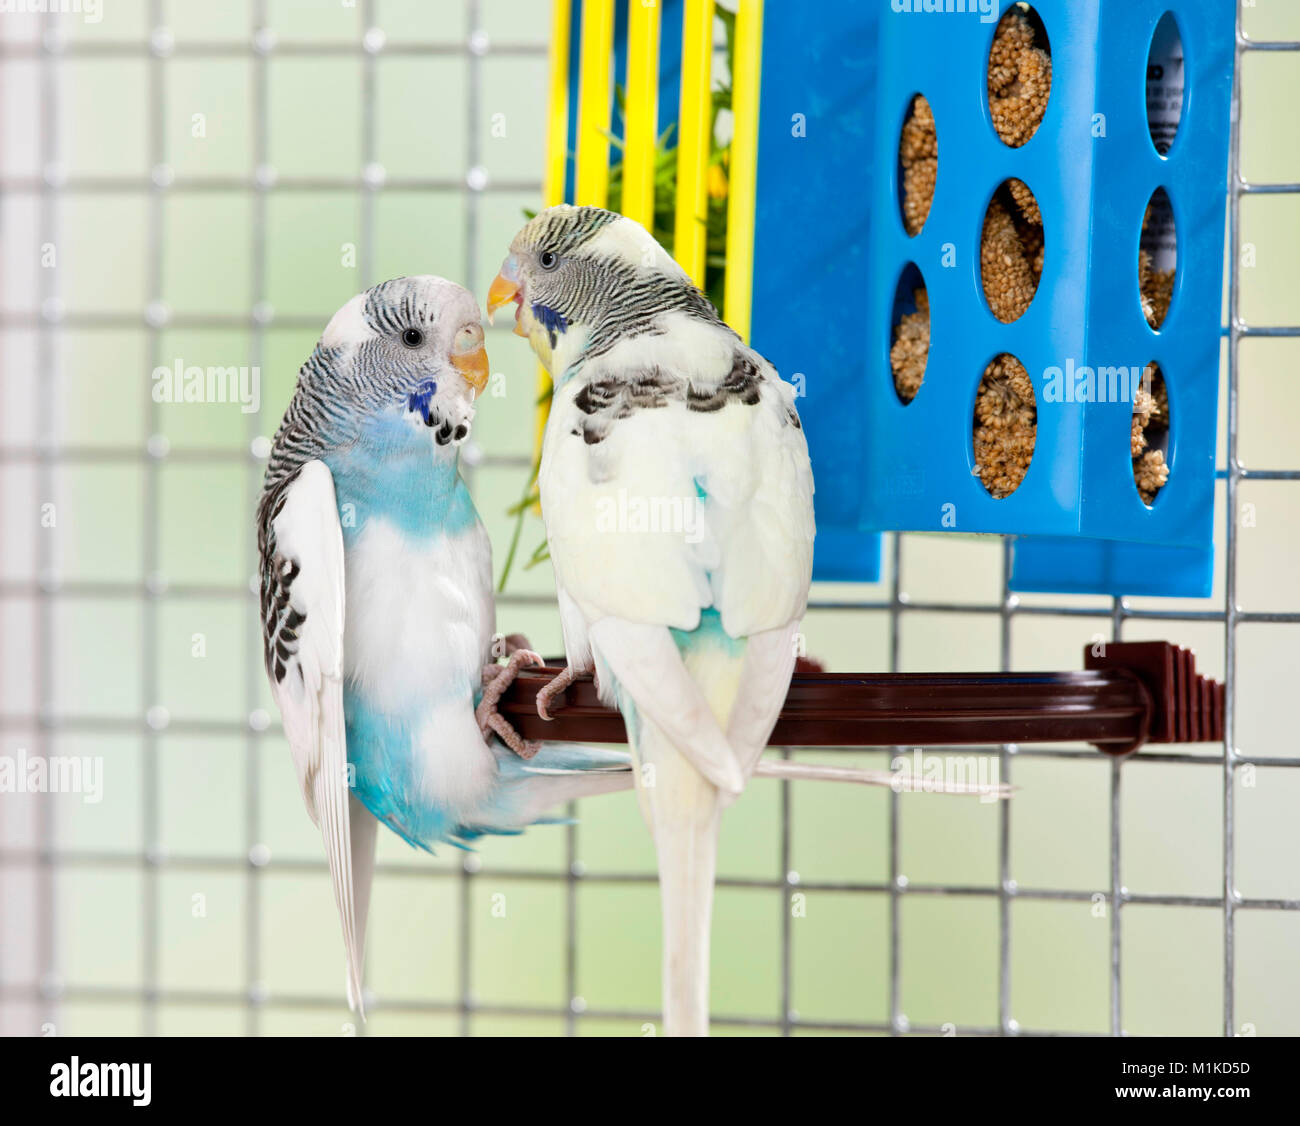 Perruche ondulée, Perruche (Melopsittacus undulatus). Deux oiseaux se chamailler à côté d'un récipient alimentaire. Allemagne Banque D'Images